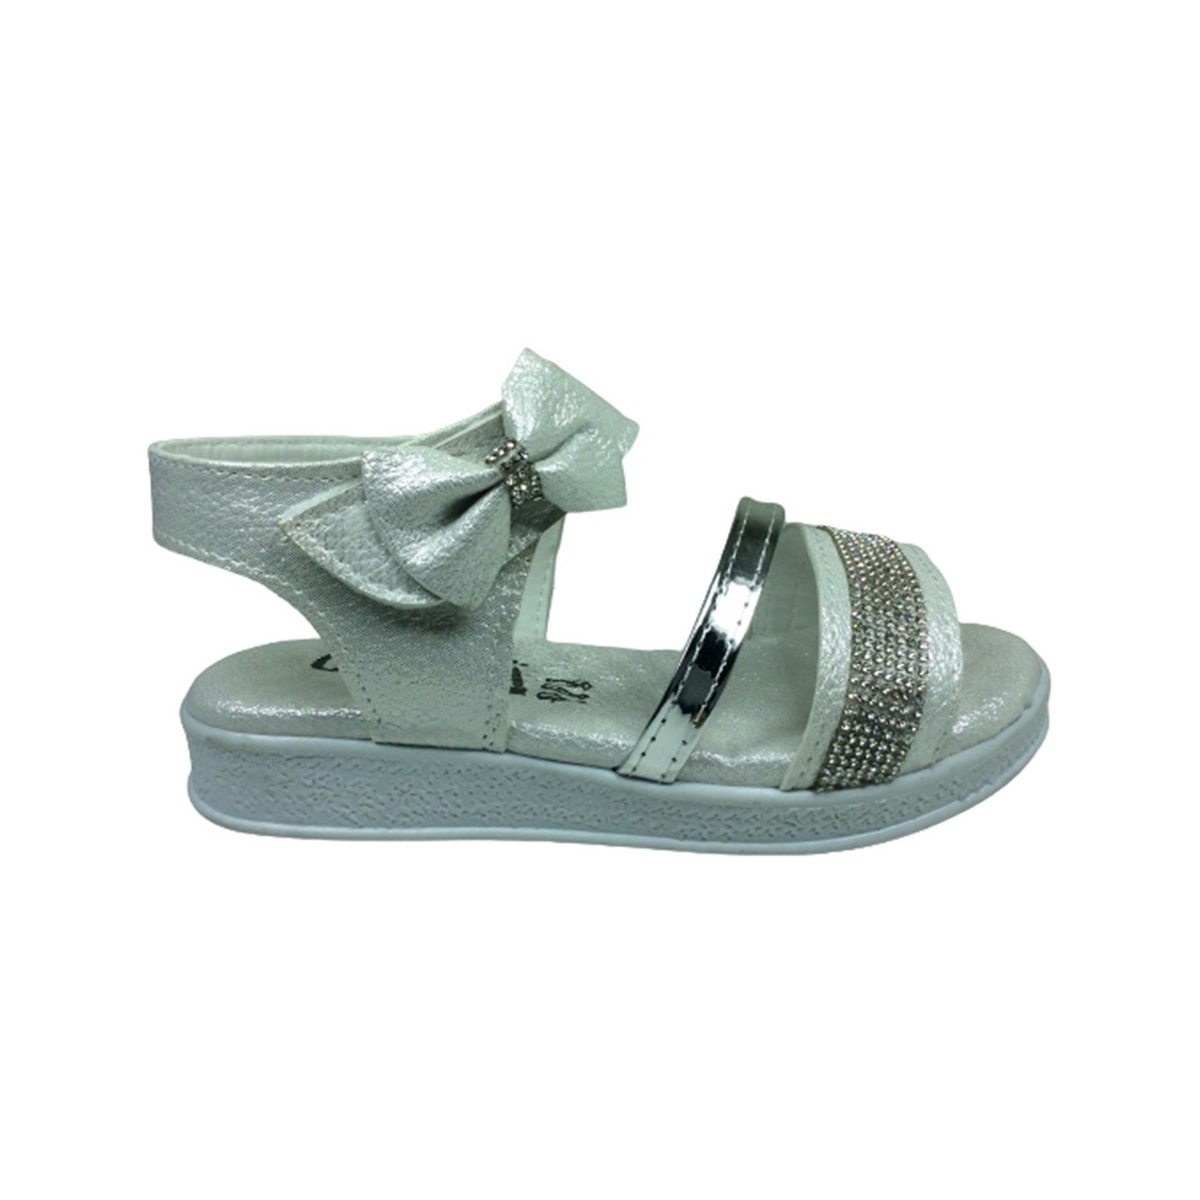 Ortopedikal Grafen Kız Çocuk Sandalet Taşlı Şeffaf Abiye Fantazi (538995083)